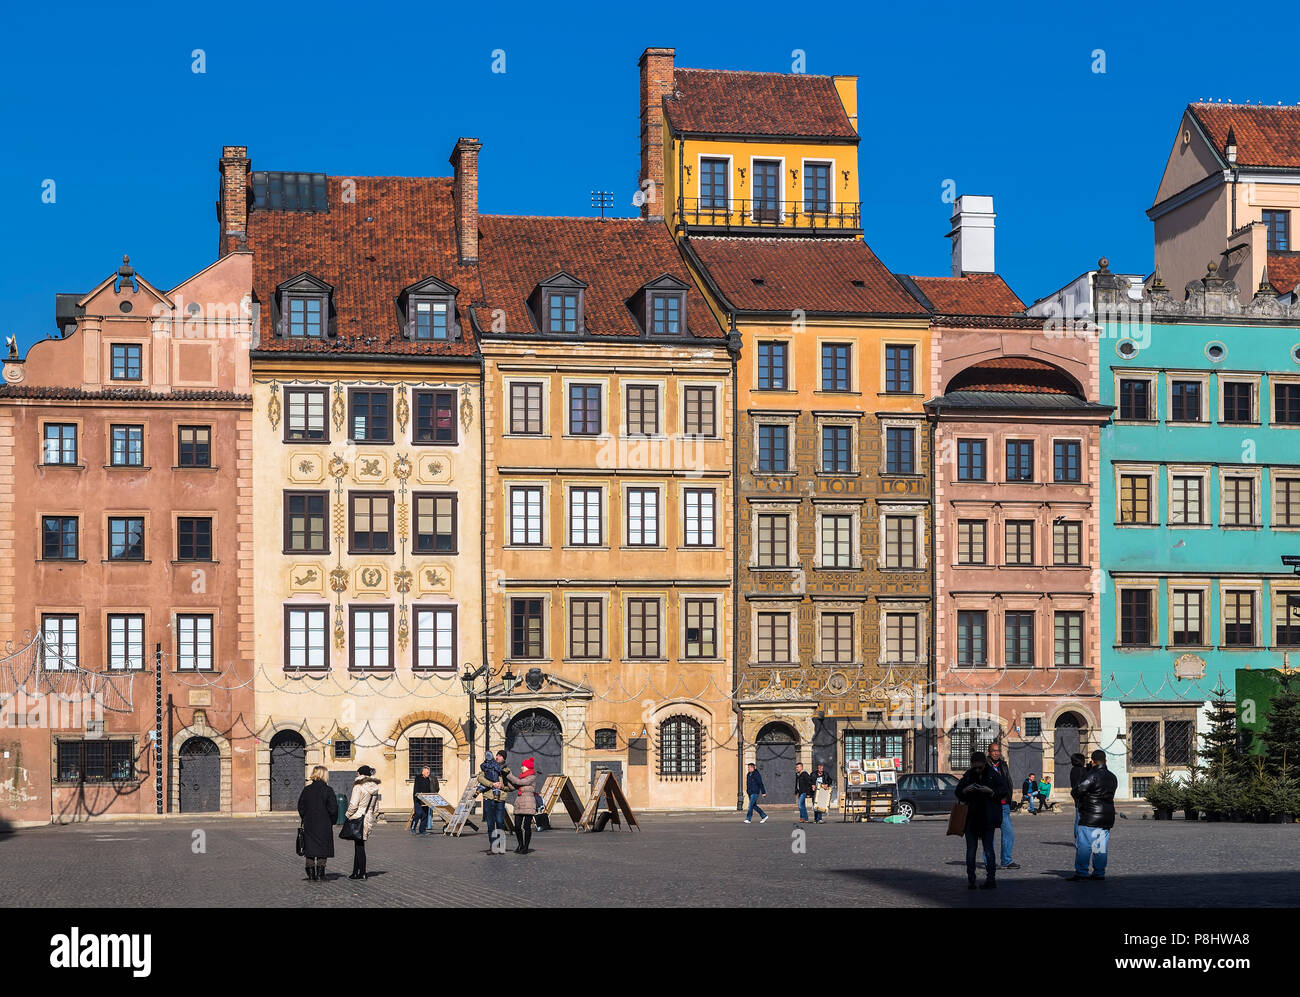 Warschau, POLEN - MÄRZ 09, 2014: Old Town Square - die Zentrale und ältesten Teil der Altstadt von Warschau. Polen Stockfoto